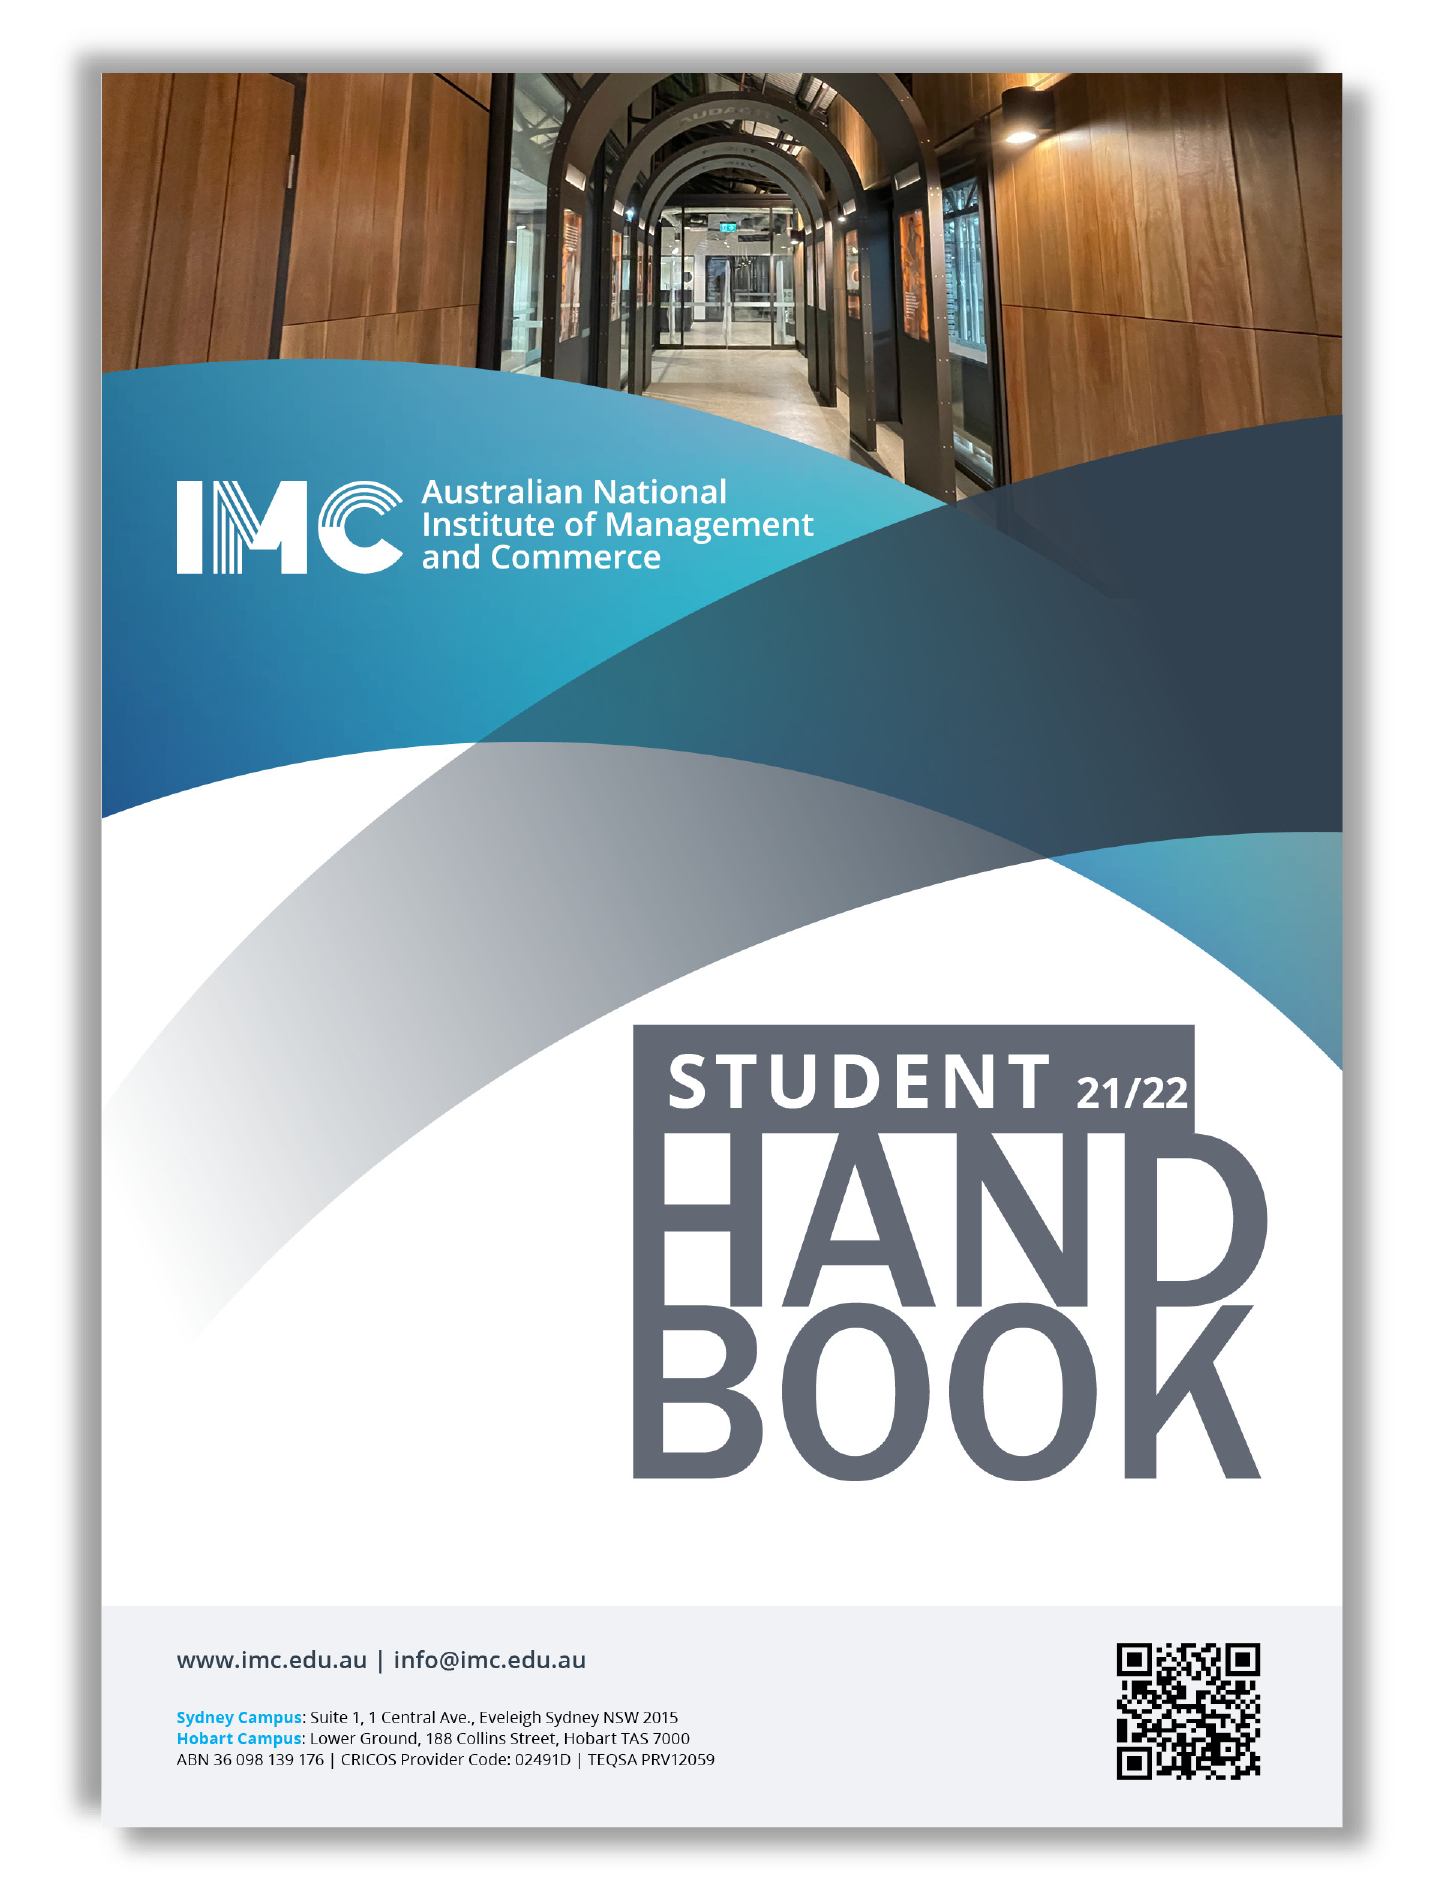 StudentHandbook_2021.03.17-01